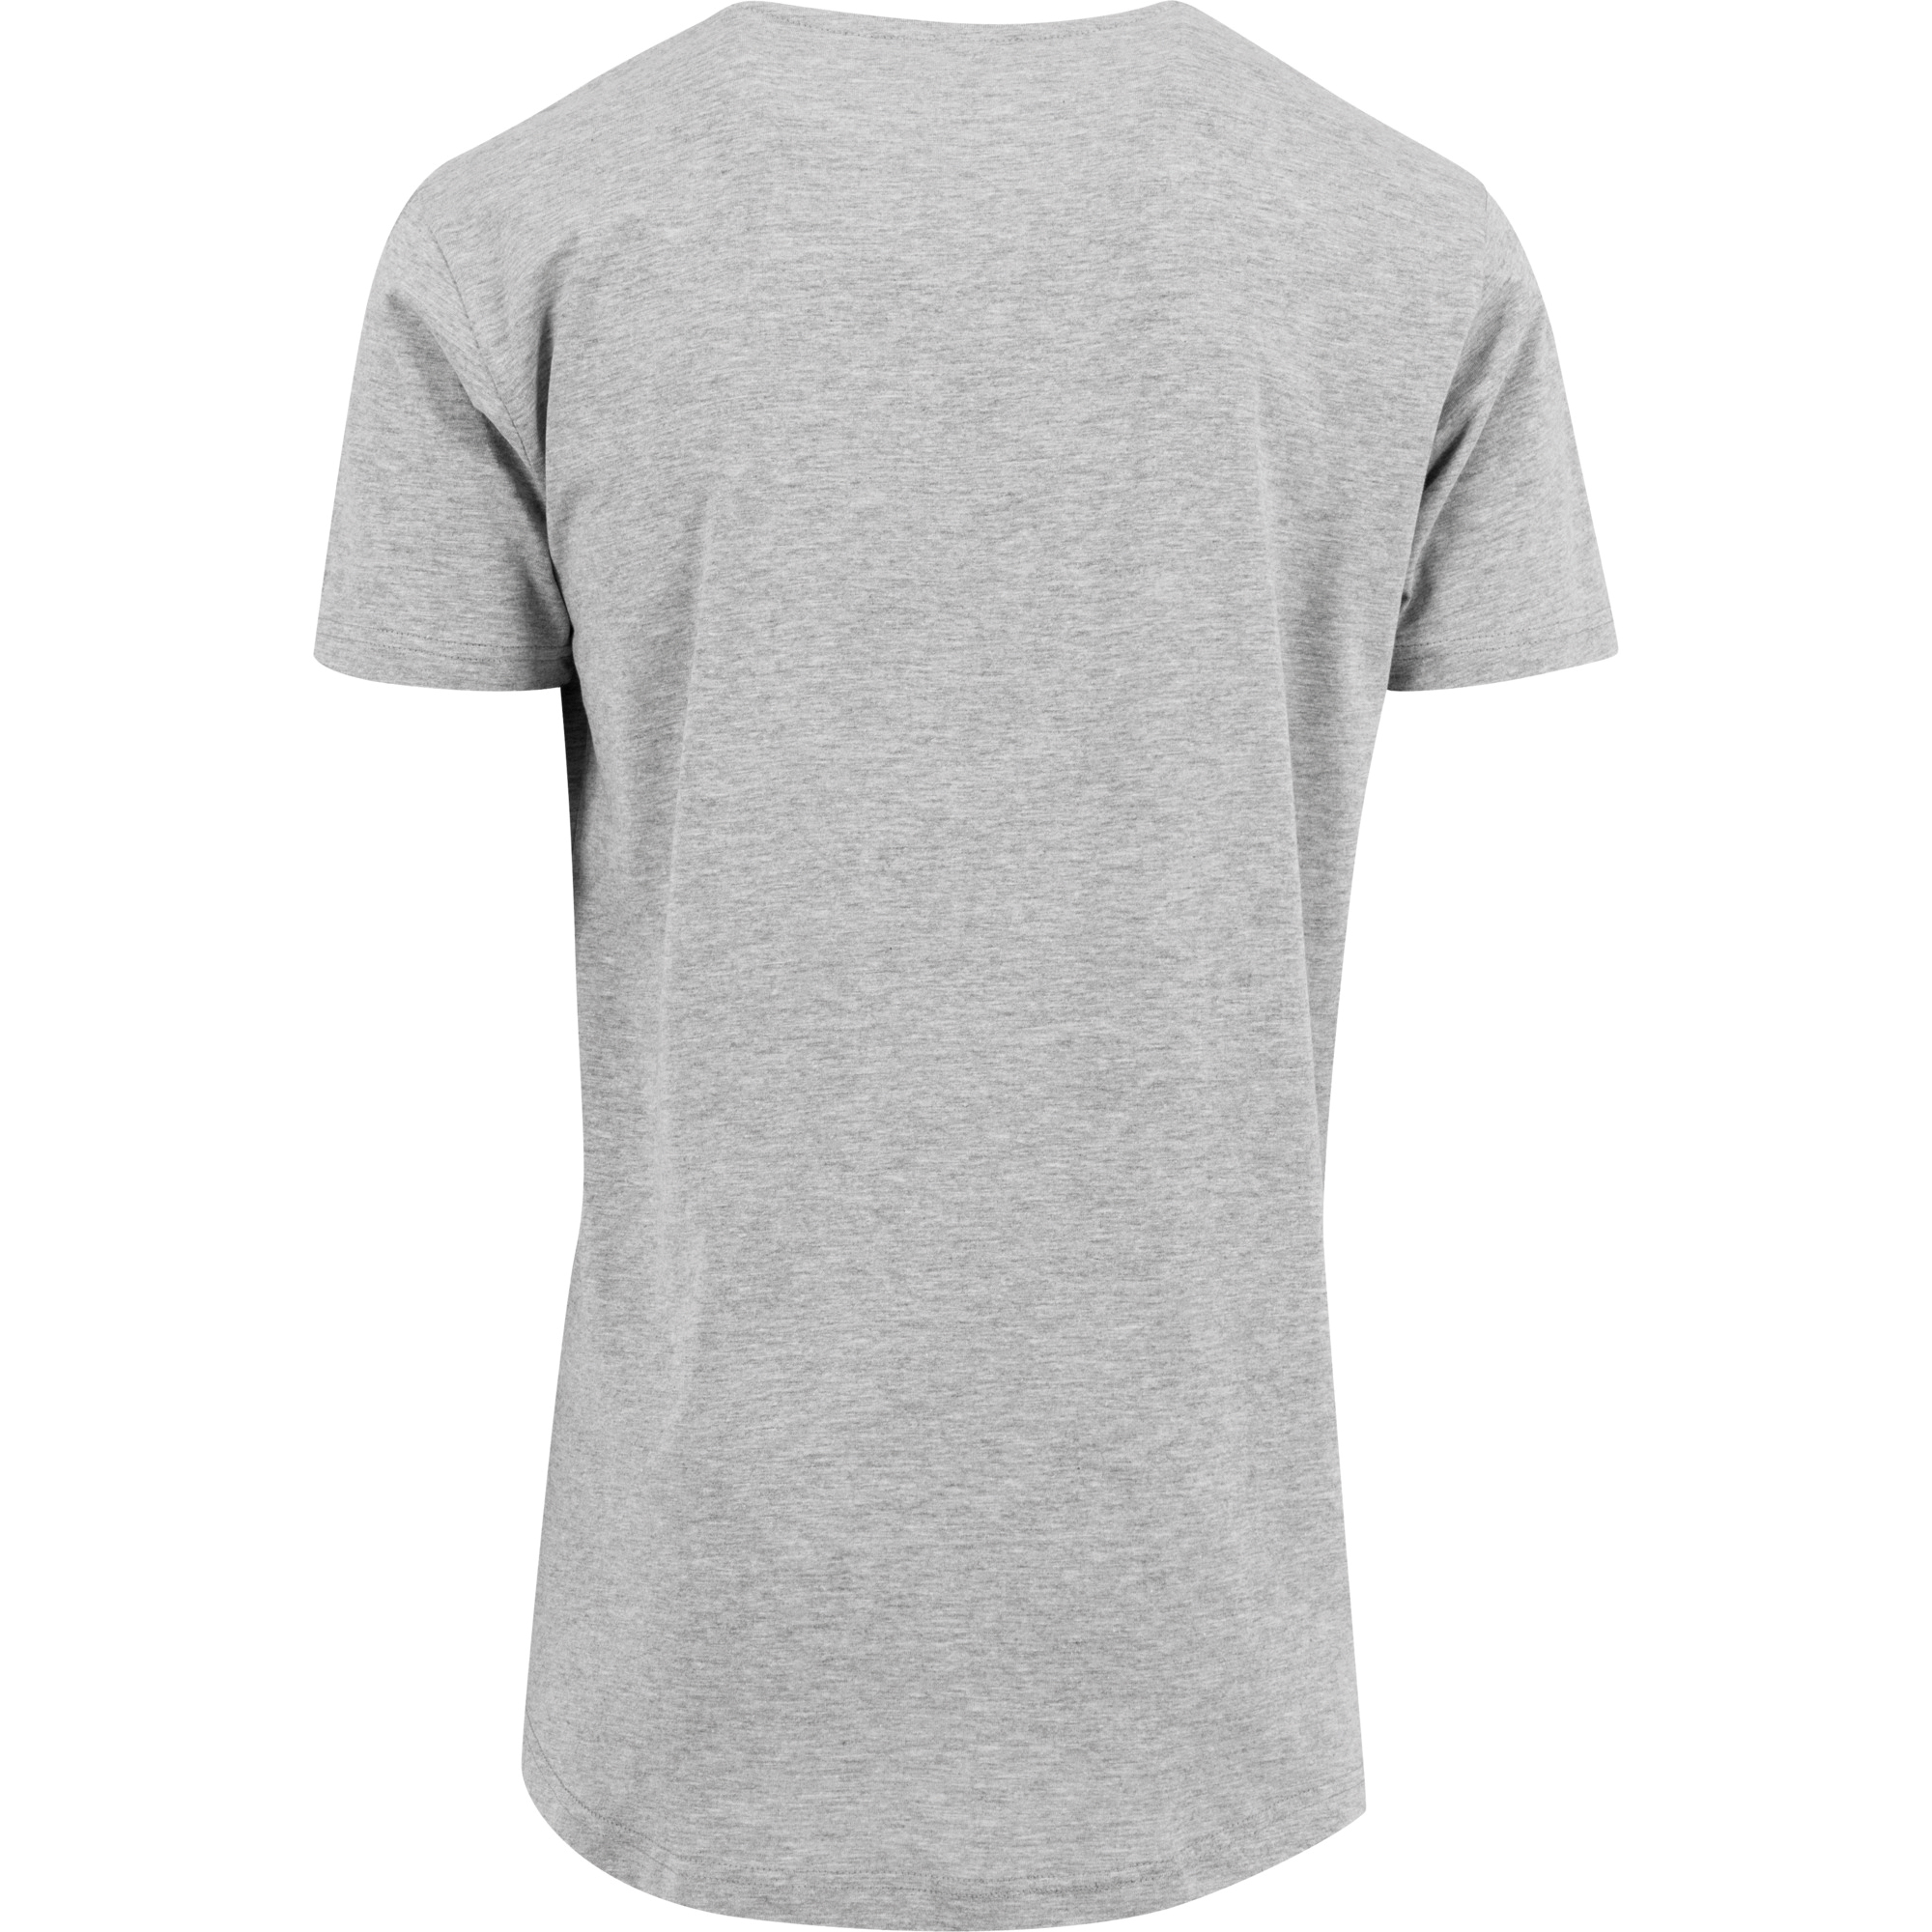 Bang om te sterven dutje voorspelling Herren Rundhals T-Shirt (extra lang geschnitten) – Bever-Store